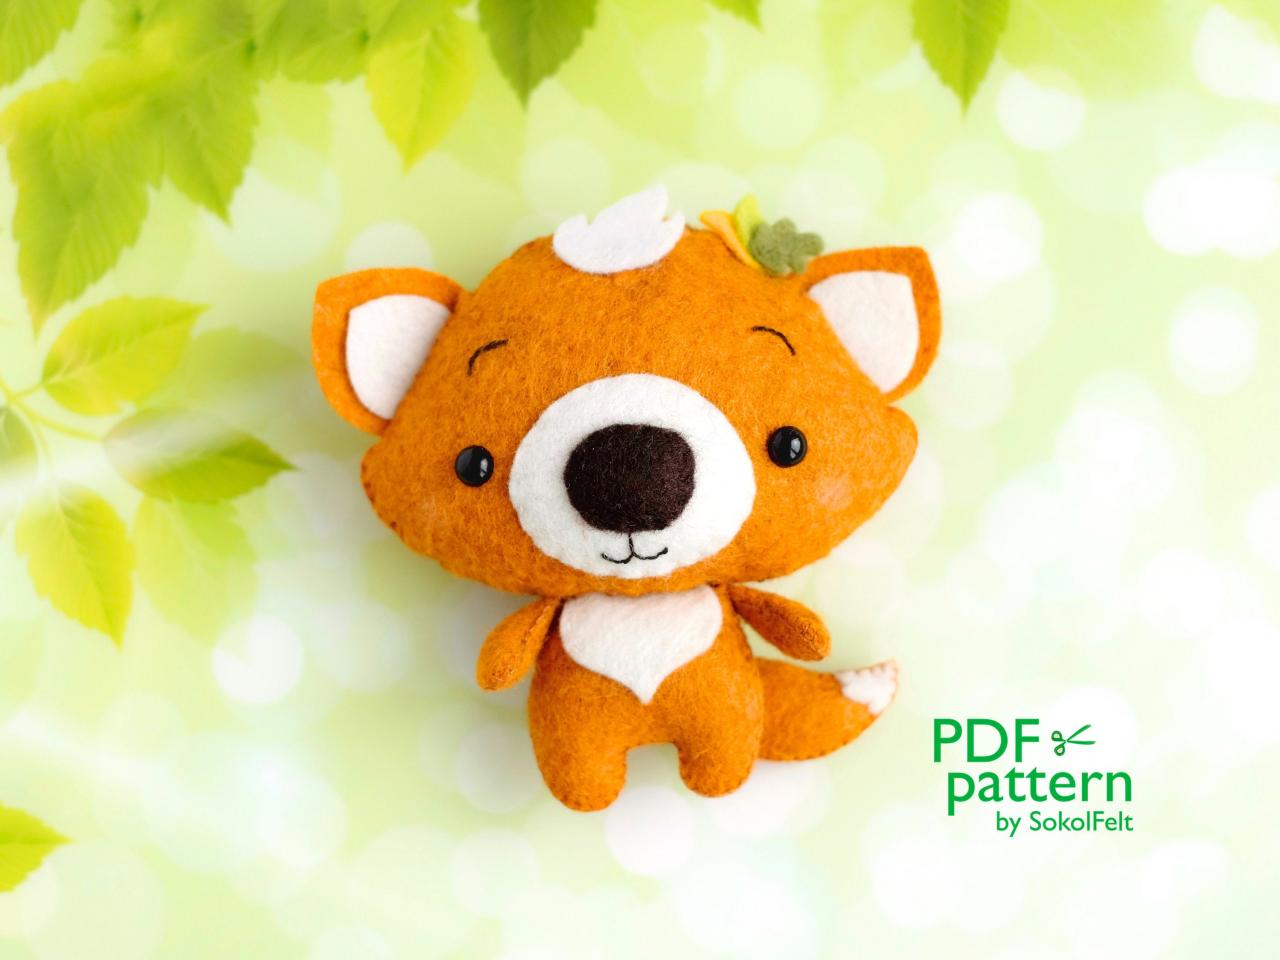 Fox sewing PDF pattern, Felt woodland animal plush toy, Baby crib mobile toy, Felt fox ornament